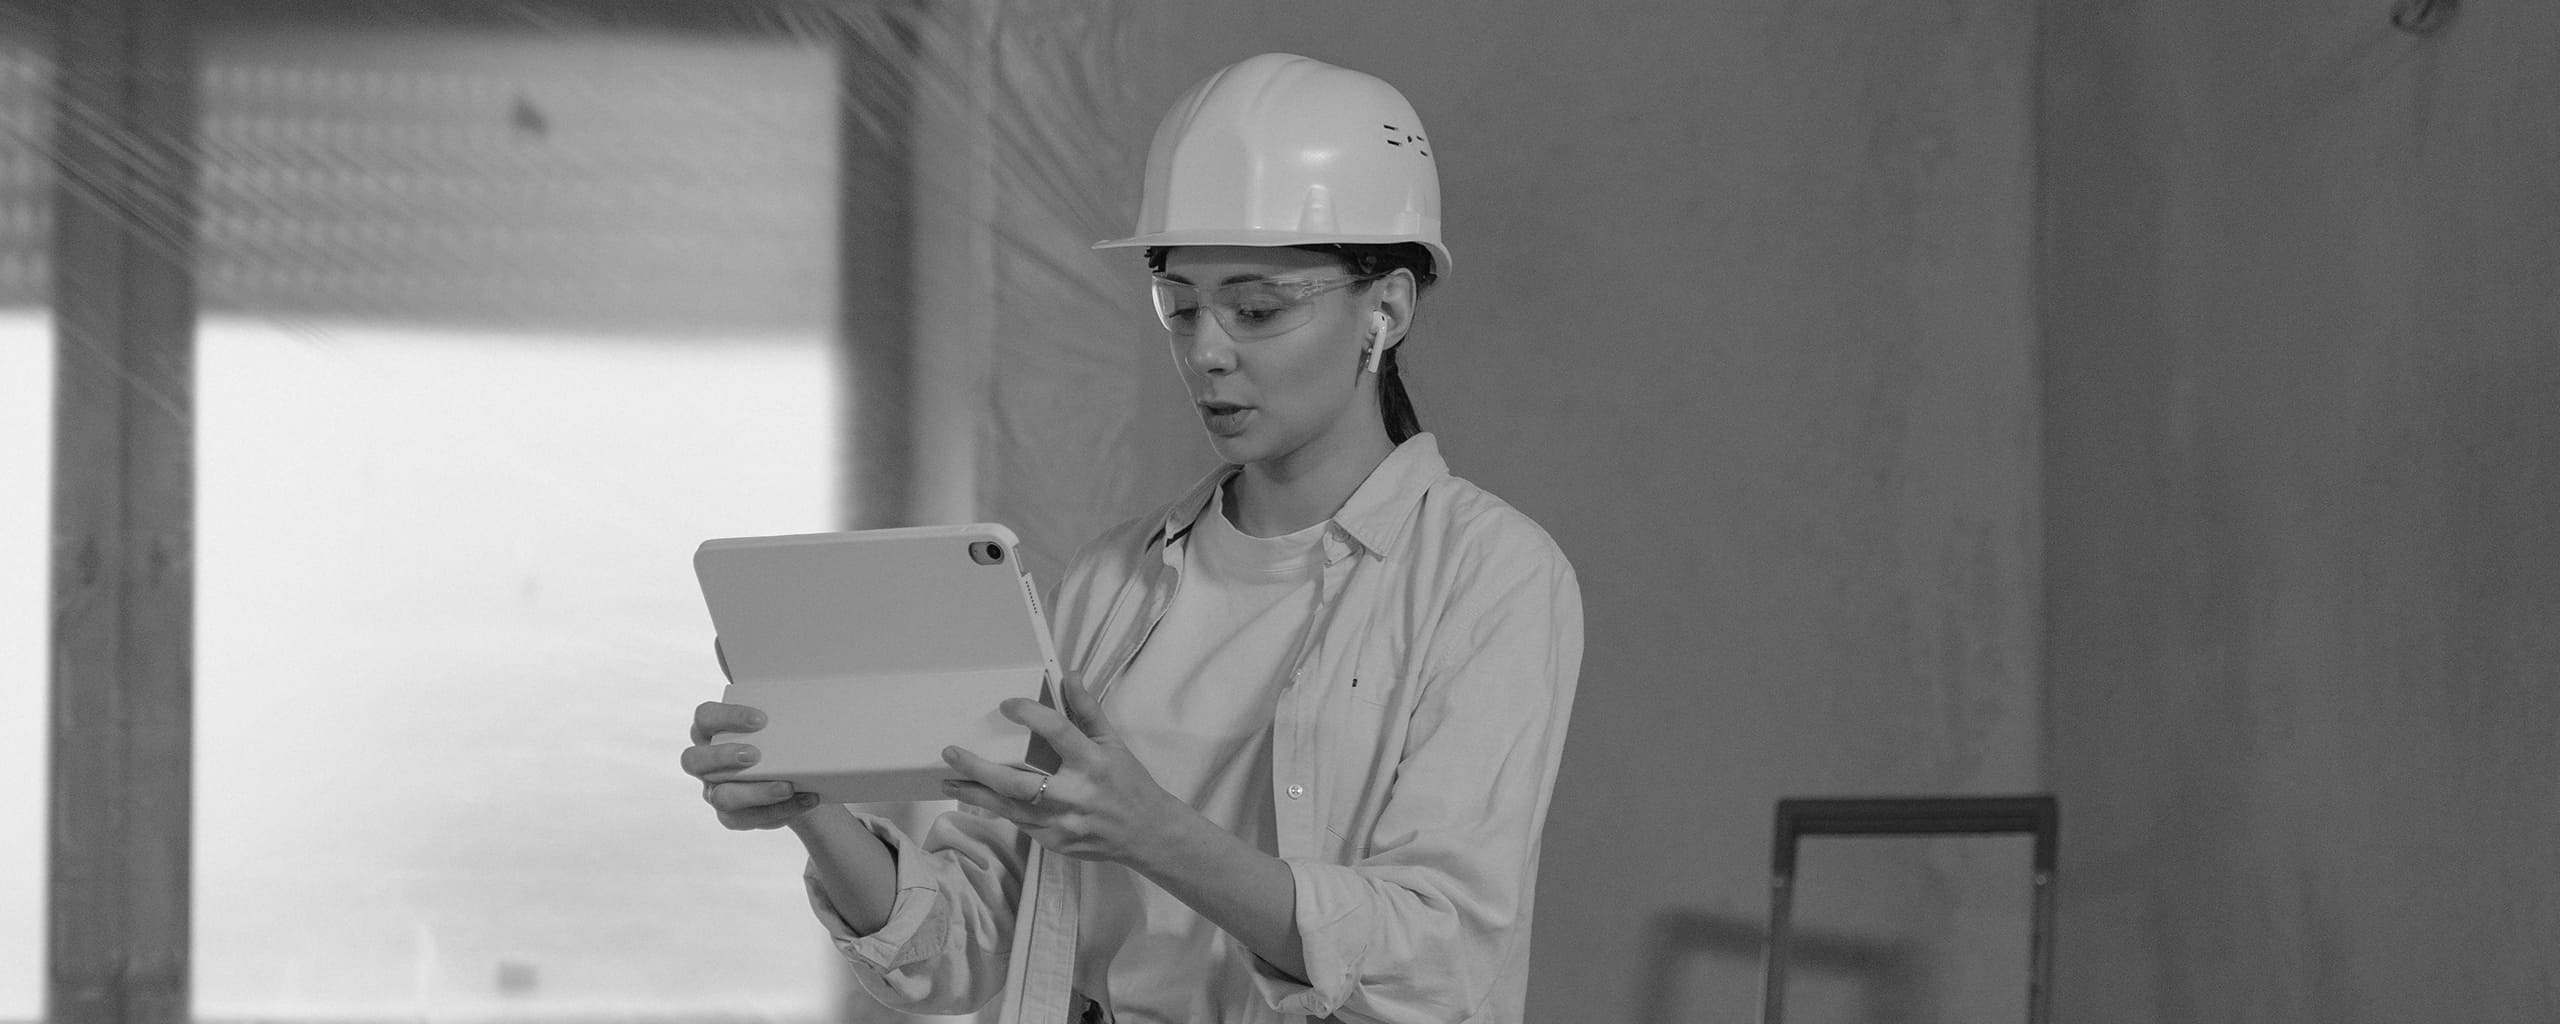 Junge Frau auf der Baustelle mit Tablet in der Hand